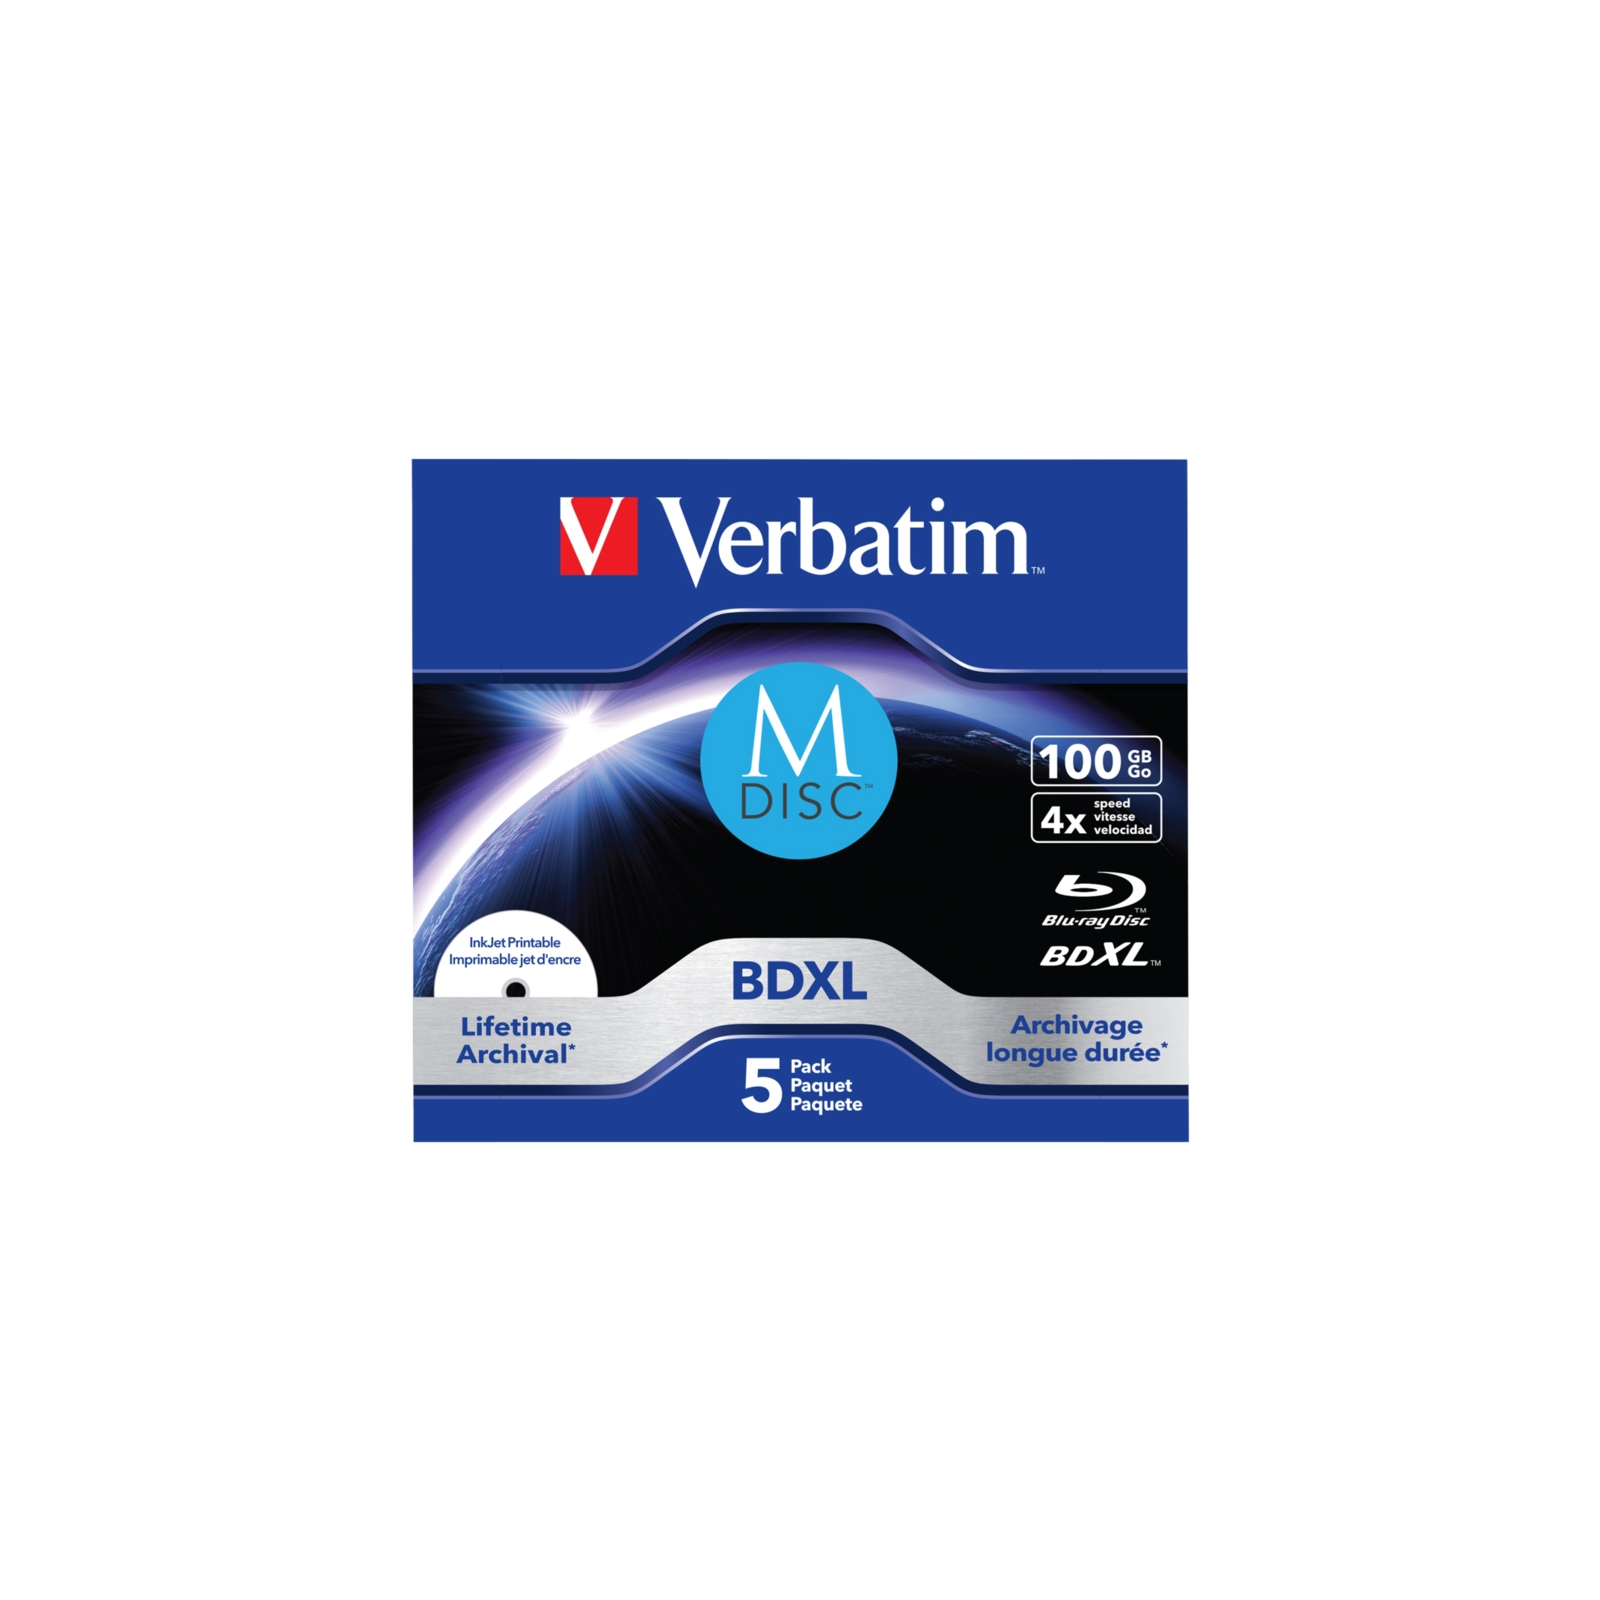 Диск BD Verbatim DL 100GB 4x Lifetime archival M-Disc 5шт Jewel (43834) зображення 2